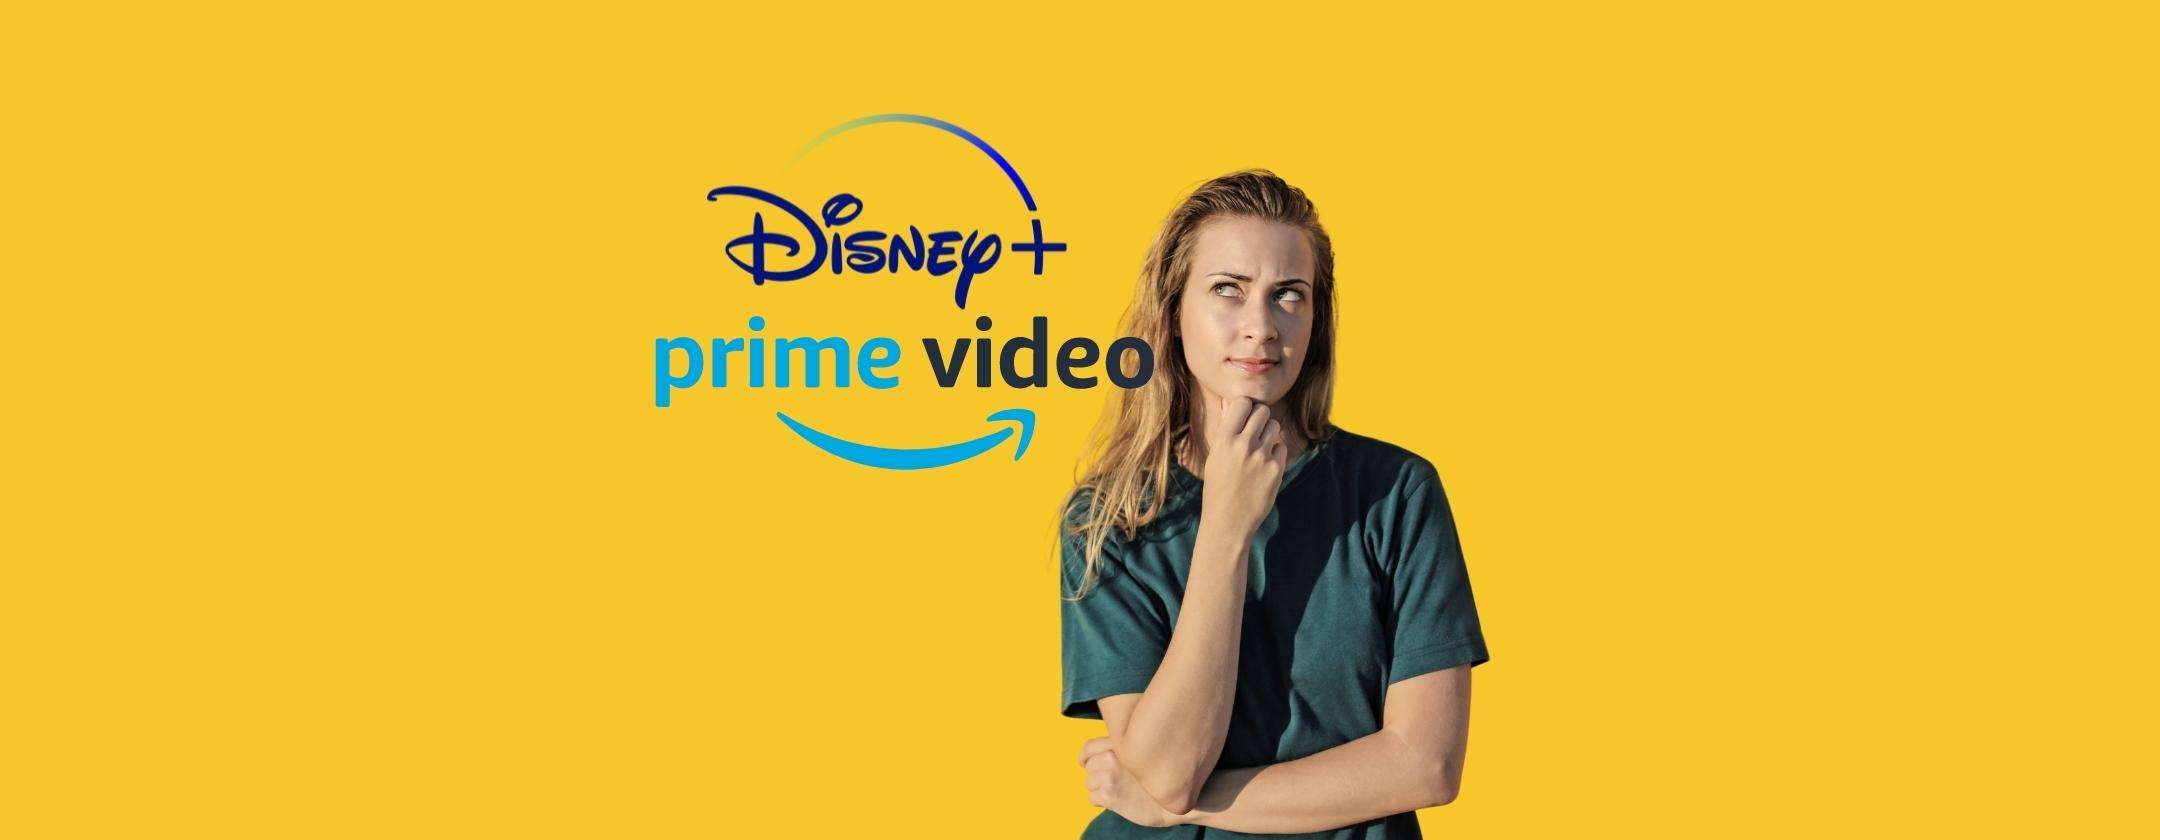 Amazon Prime Video e Disney+: quale scegliere secondo i tuoi gusti